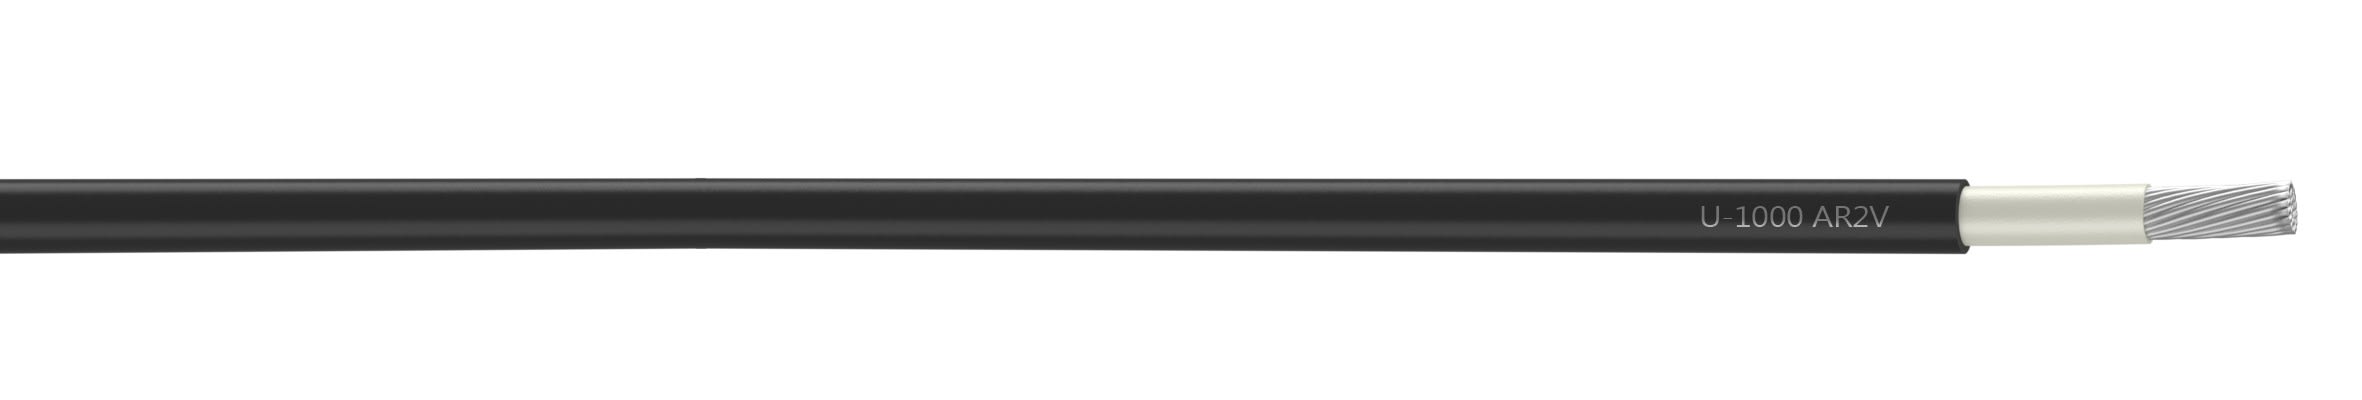 Nexans - Cable rigide U-1000 AR2V aluminium 1x500 longueur a la coupe